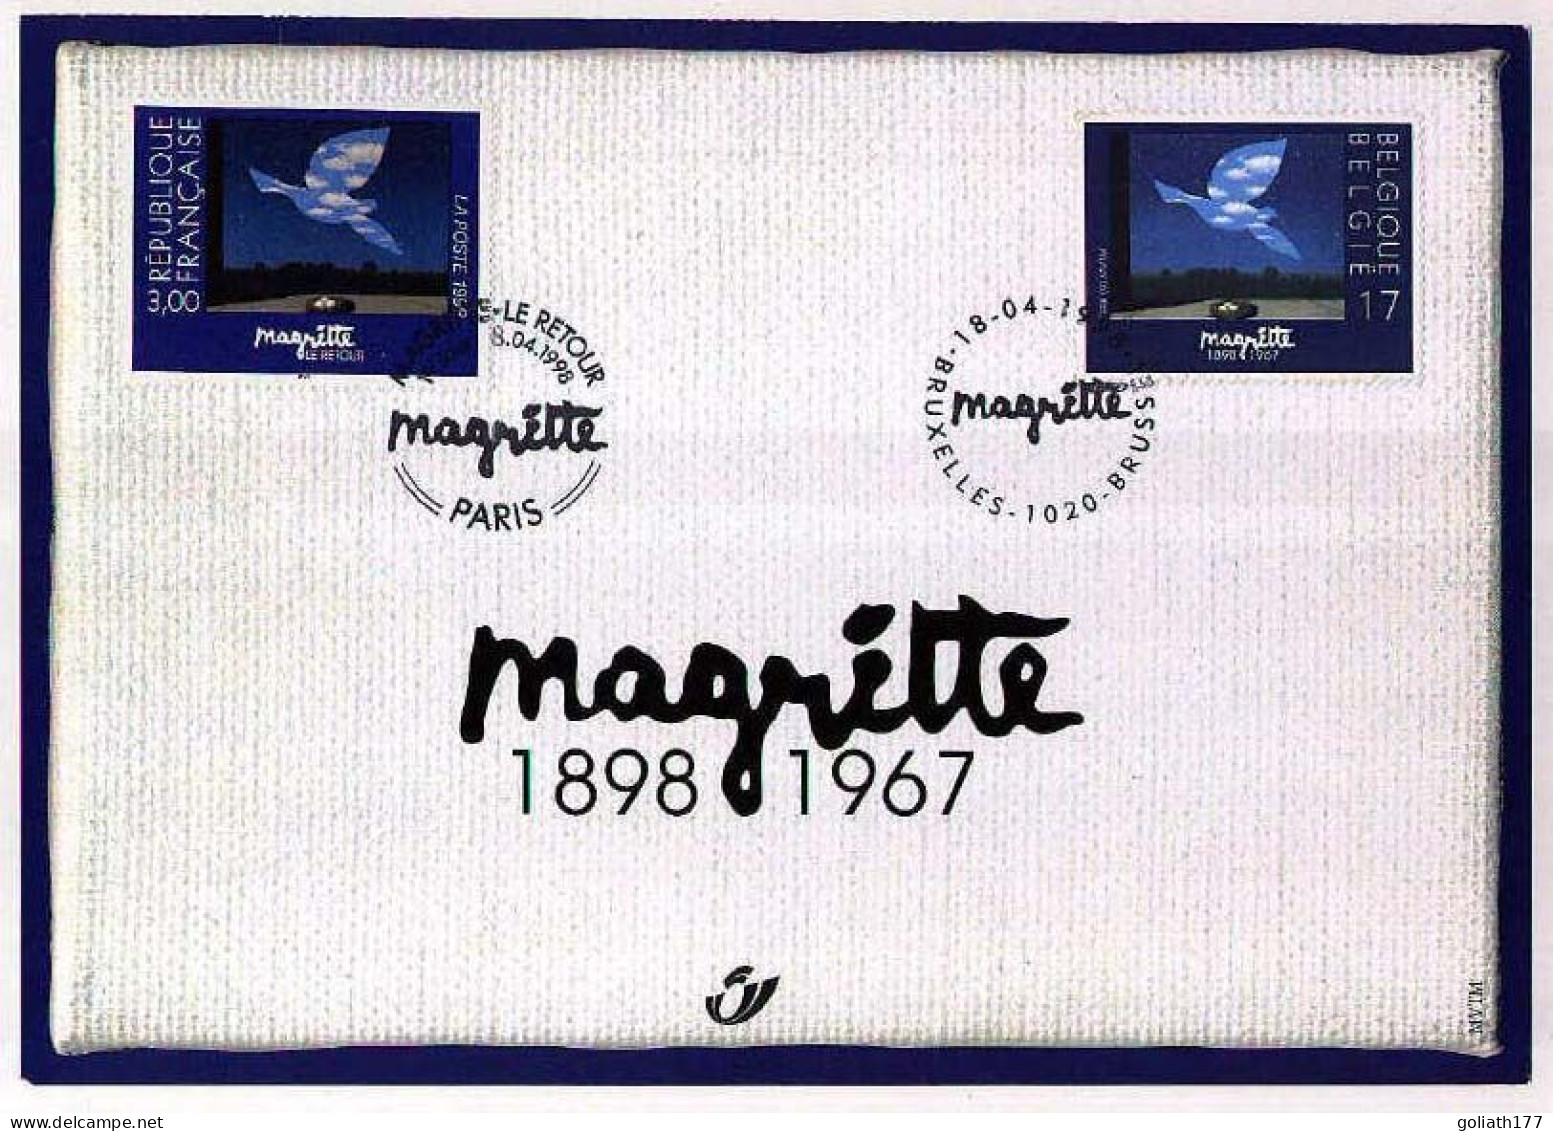 2755HK - Herdenkingskaart "Magritte" - Erinnerungskarten – Gemeinschaftsausgaben [HK]